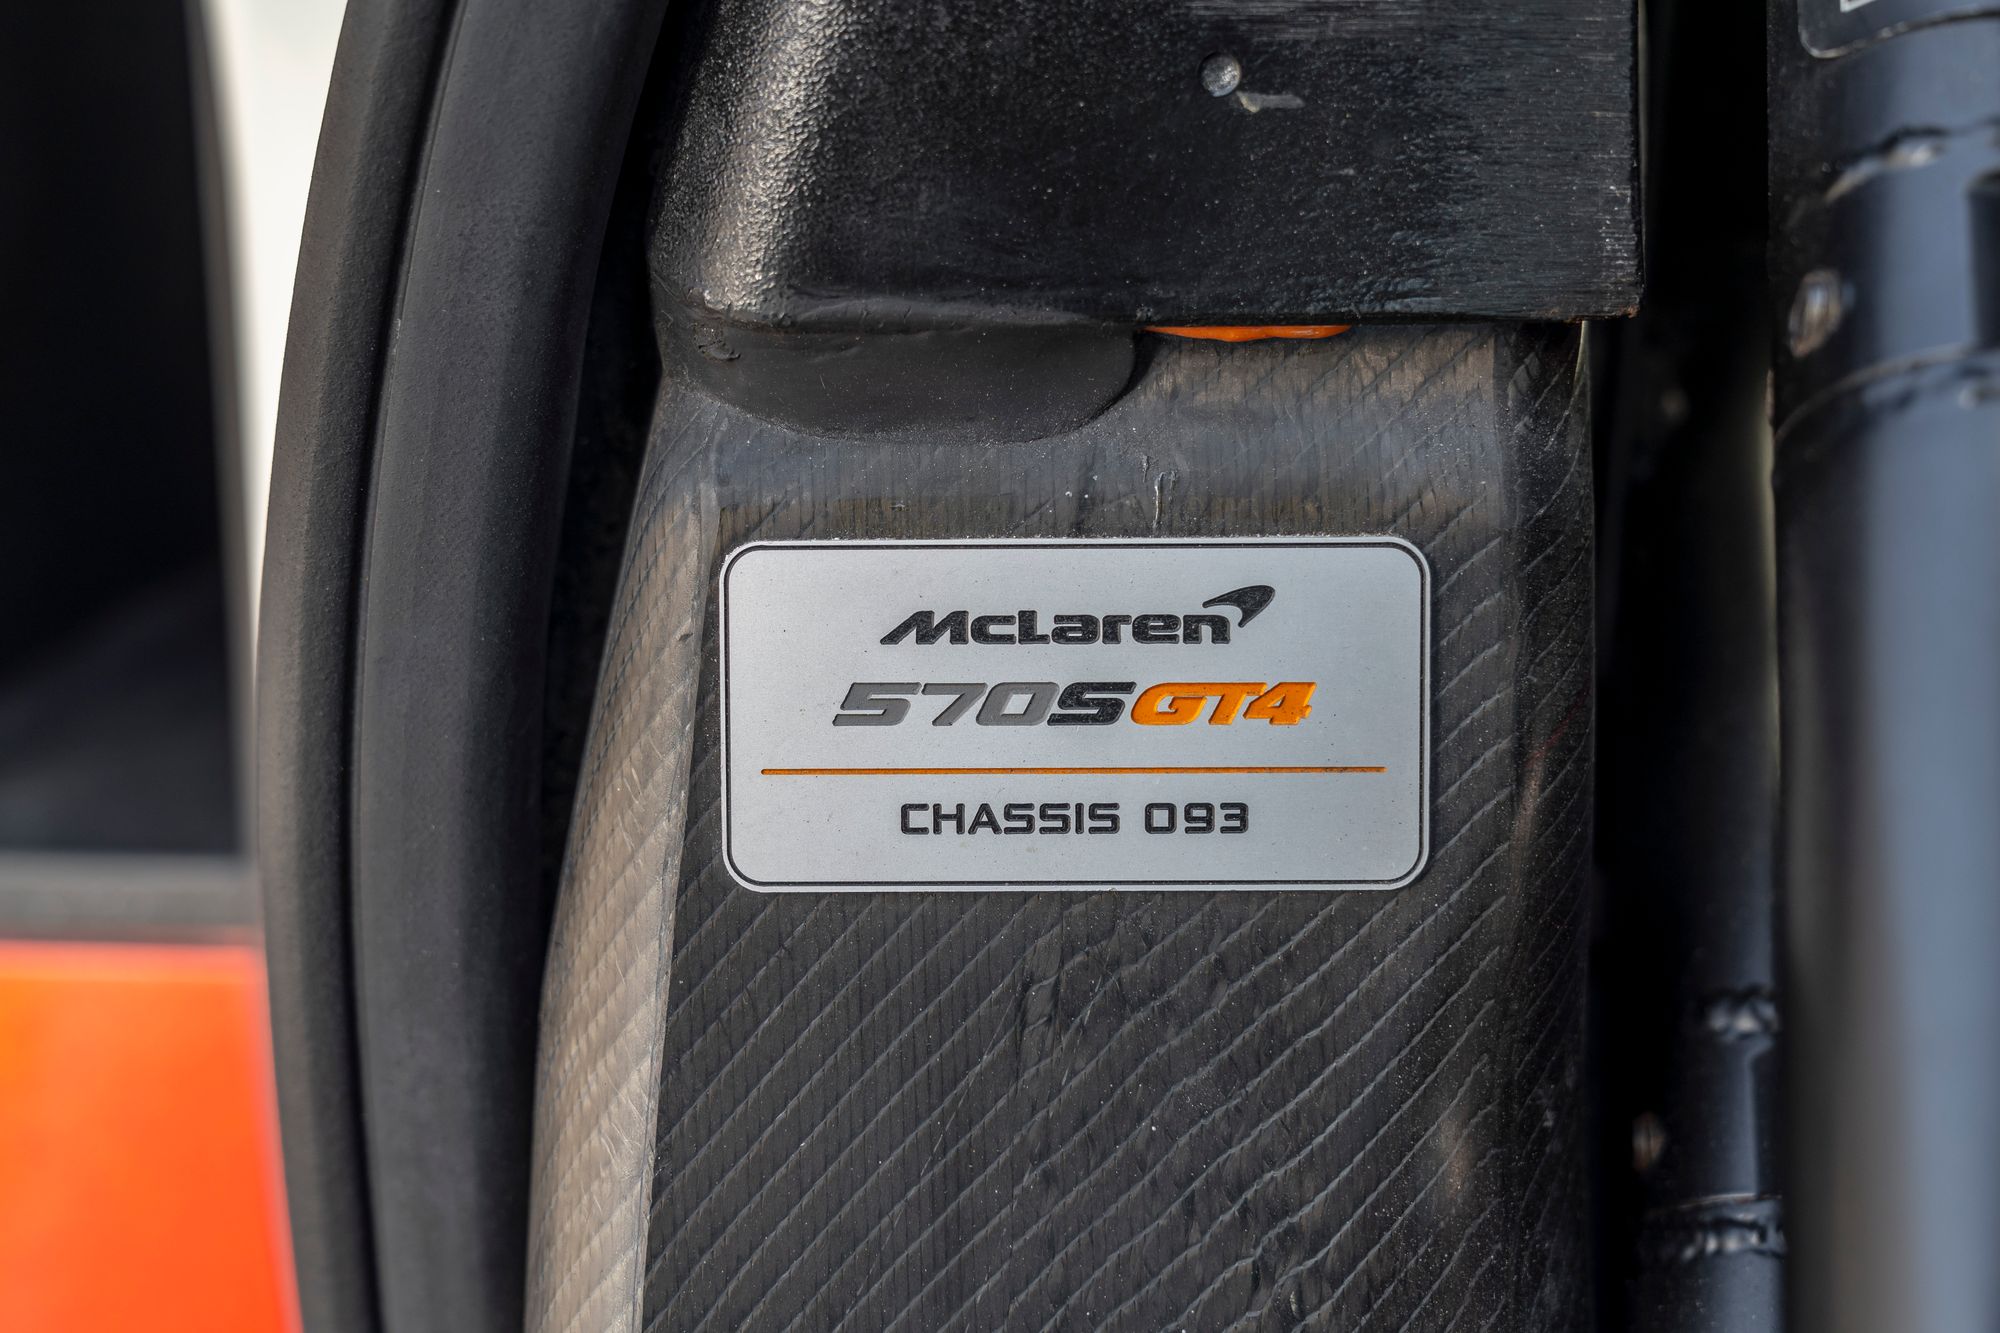 2017 McLaren 570S GT4